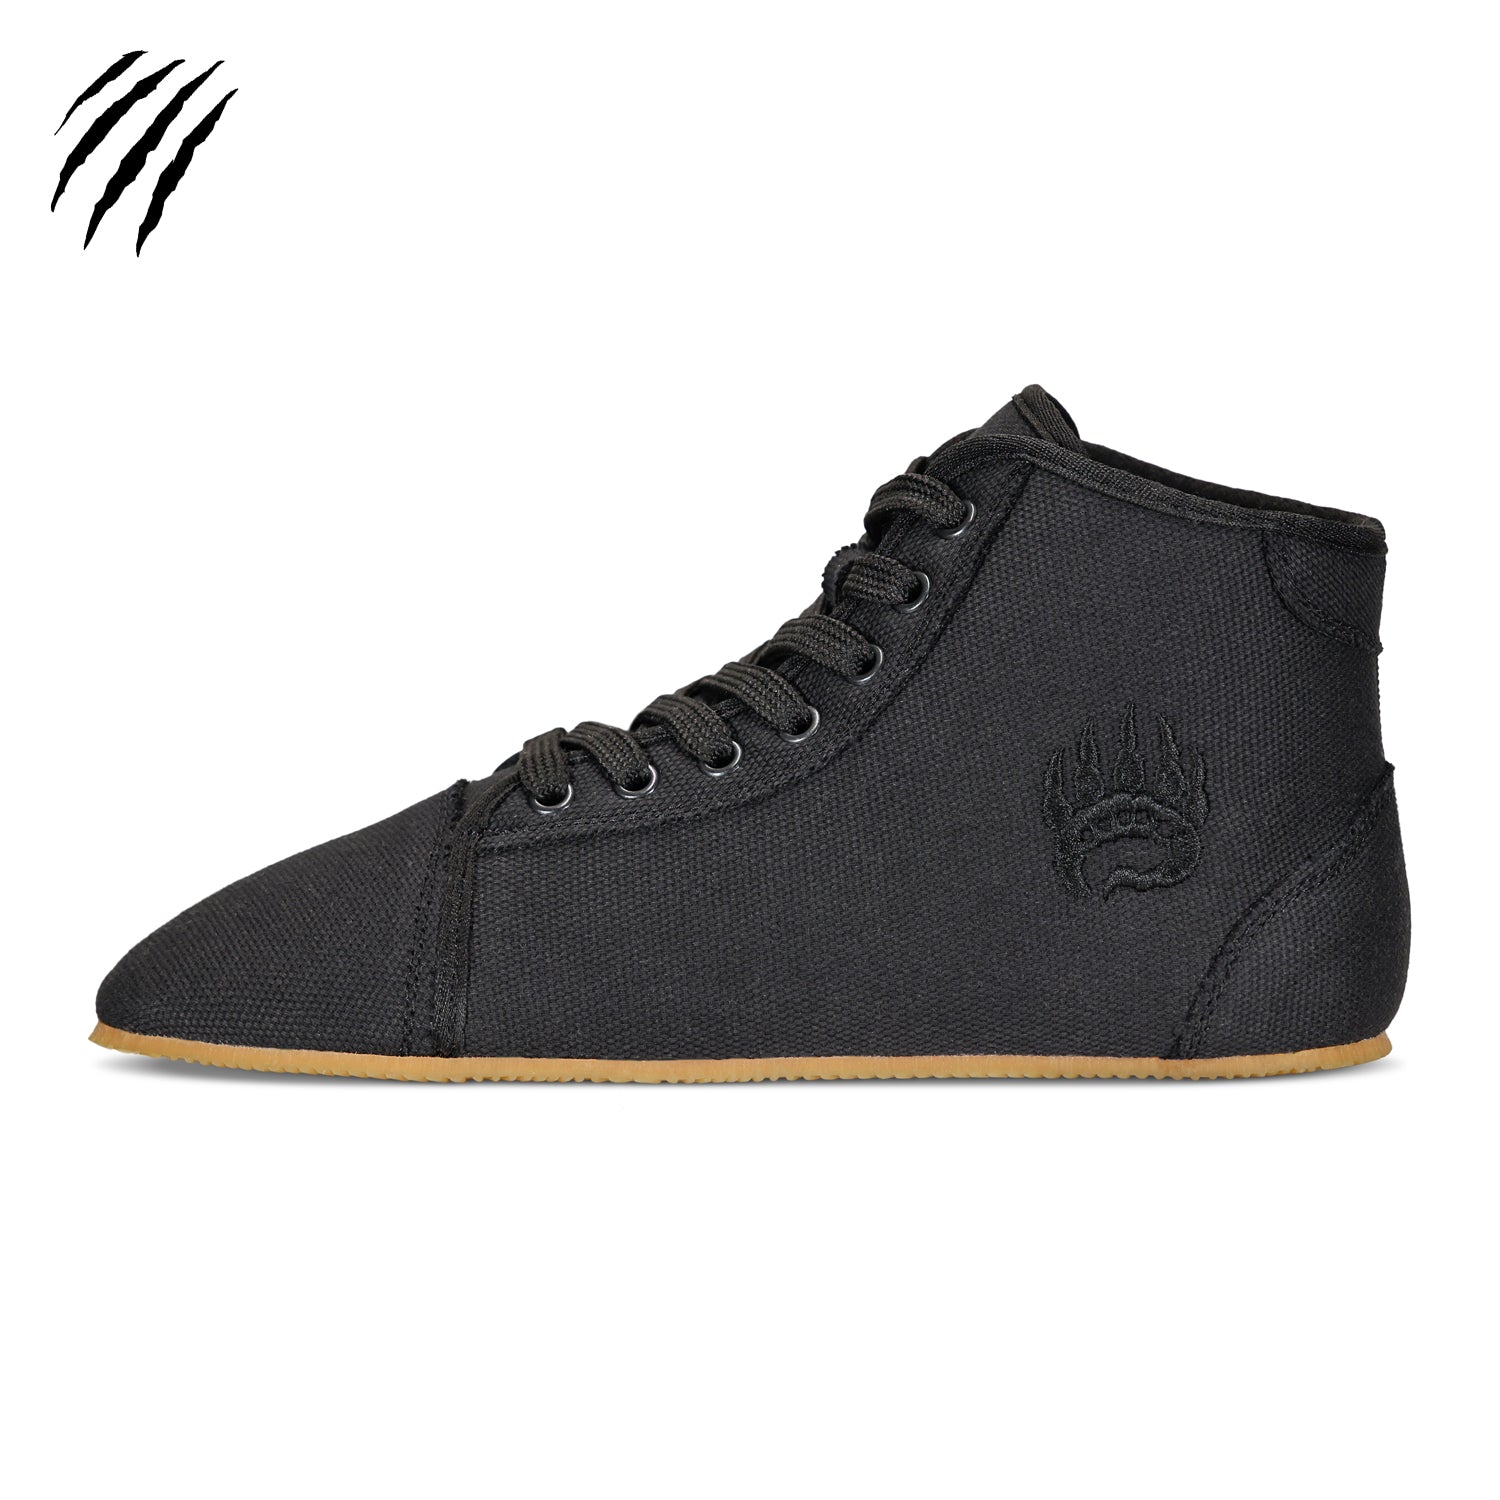 Bearfoot - Ursus C - HT / Black (Blemished) - Sneaker